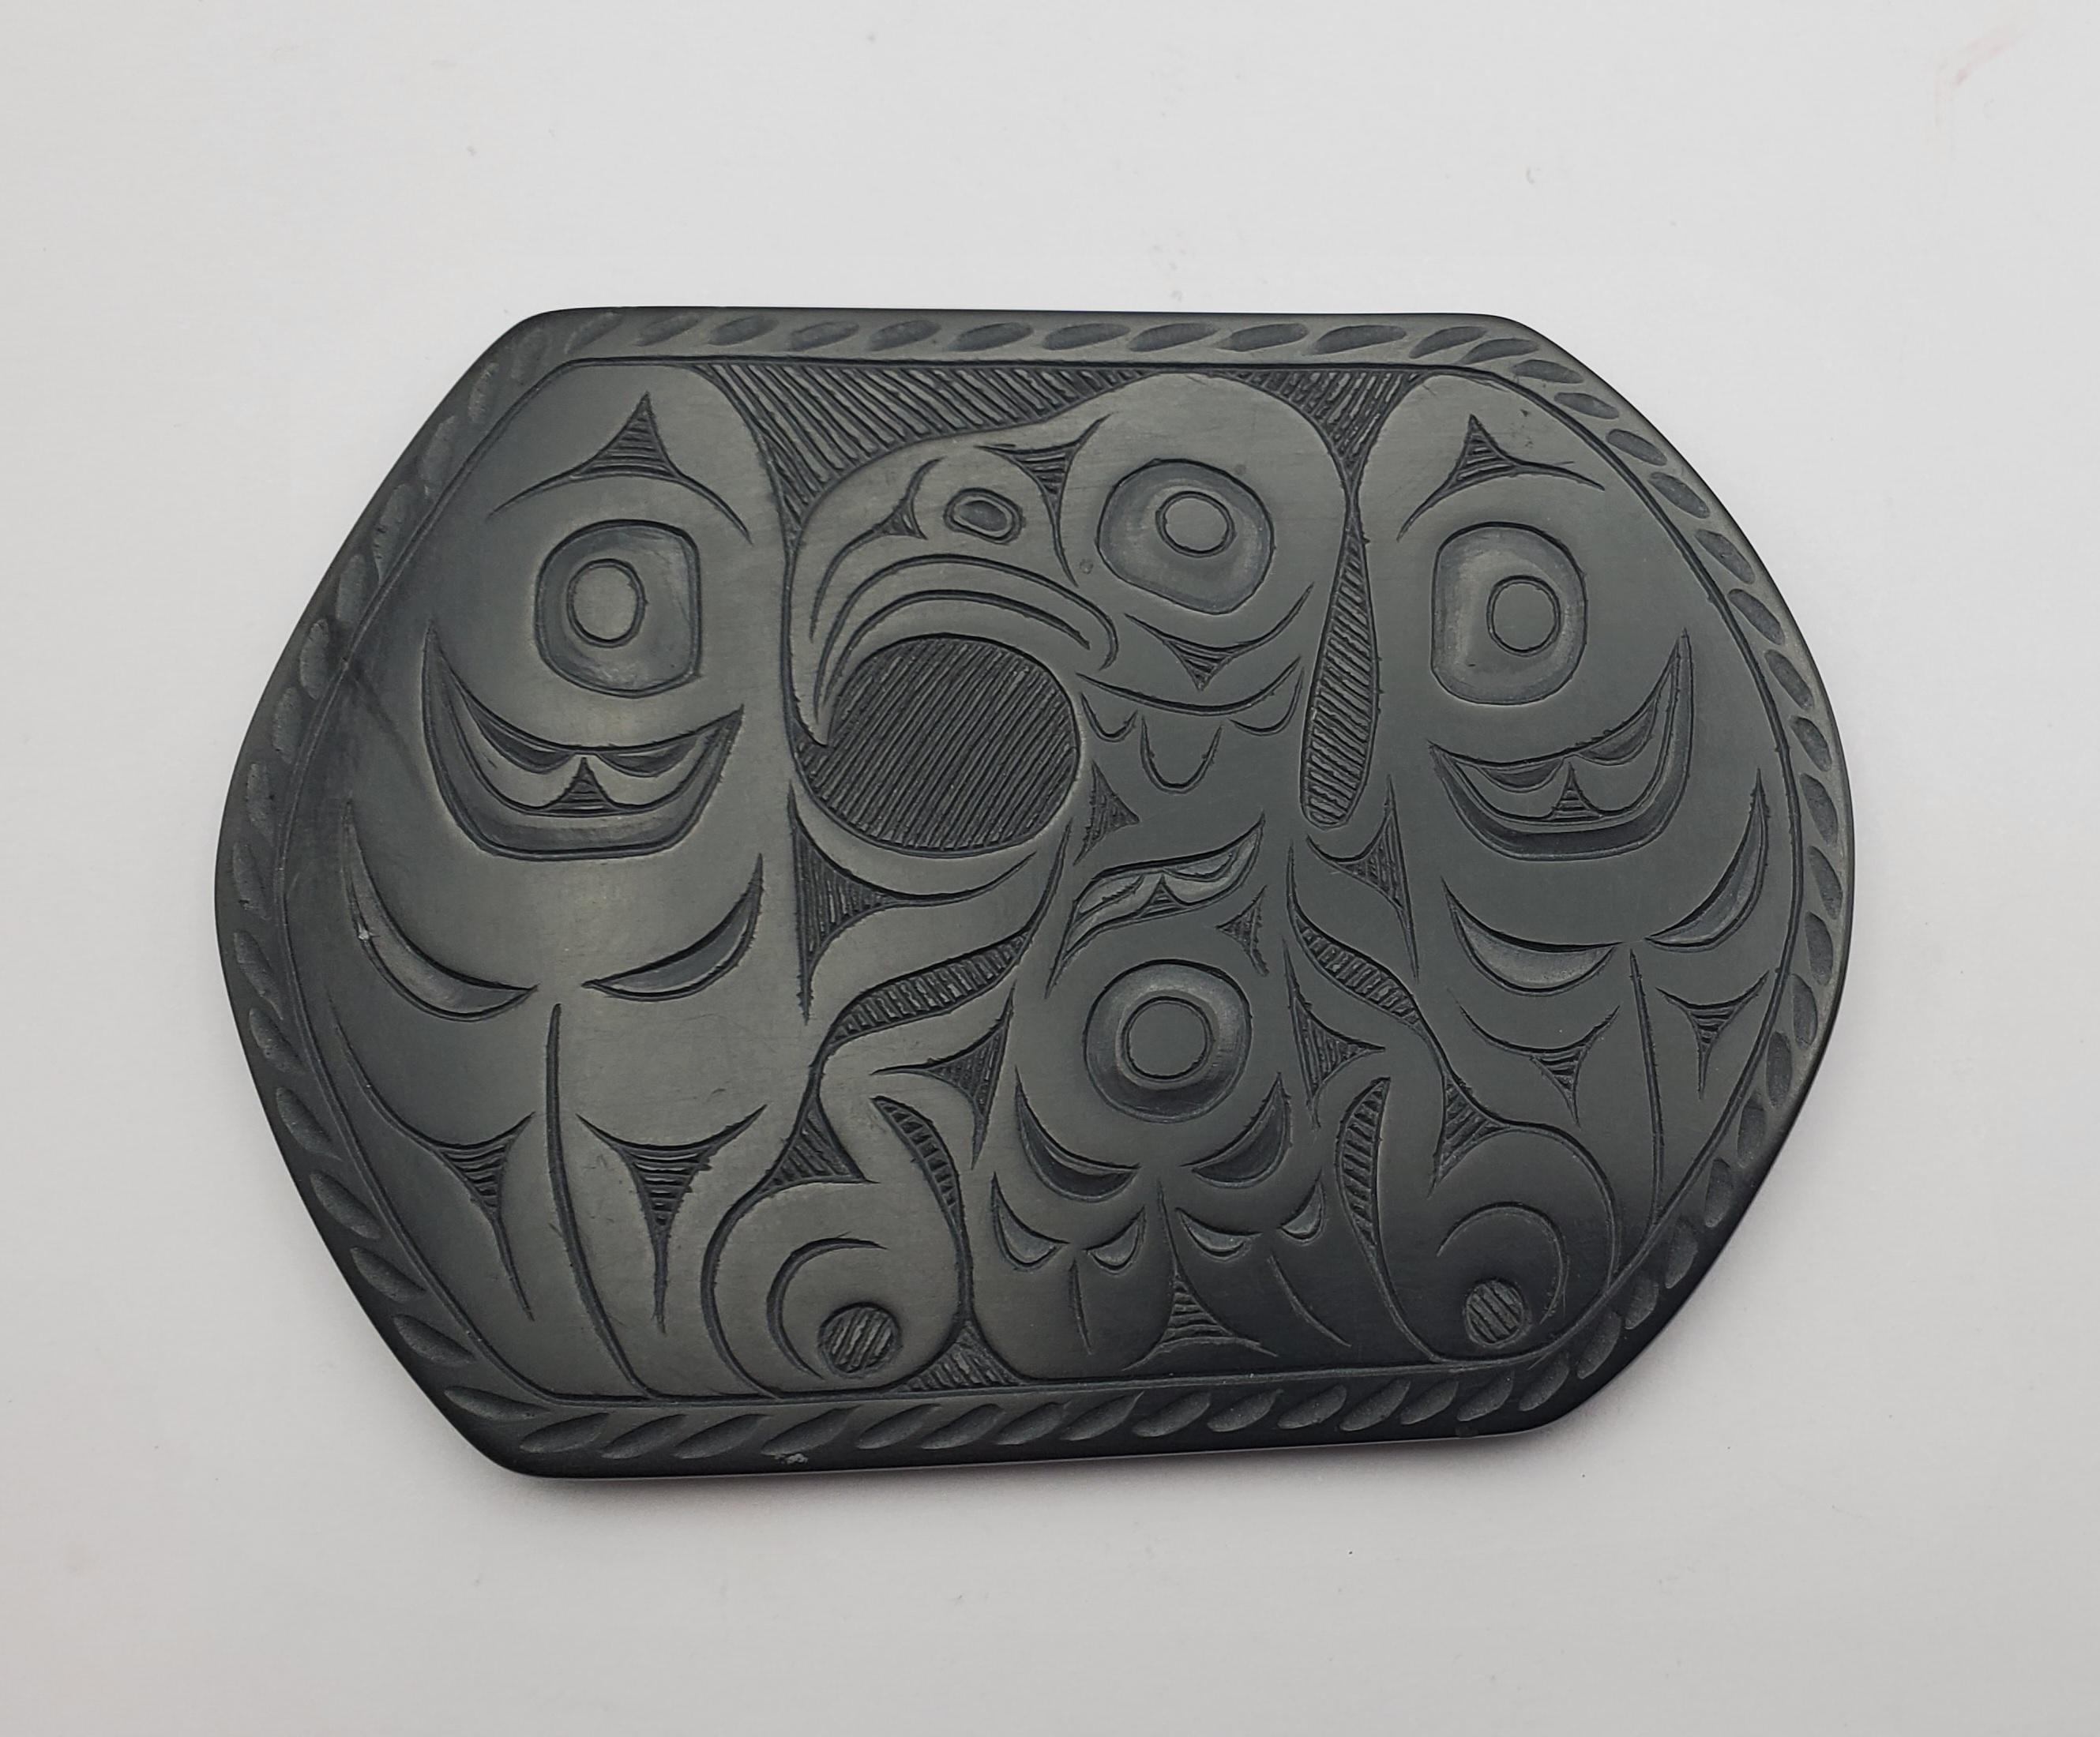 Auffälliges Argillit-Tablett des Schnitzers Pat Dixon von den First Nations. Argillit ist ein hartes schwarzes Gestein, das auf den Queen Charlotte Islands gefunden wird. Die Rückseite des Tabletts ist mit Pat Dixon 8/96 signiert.

Der